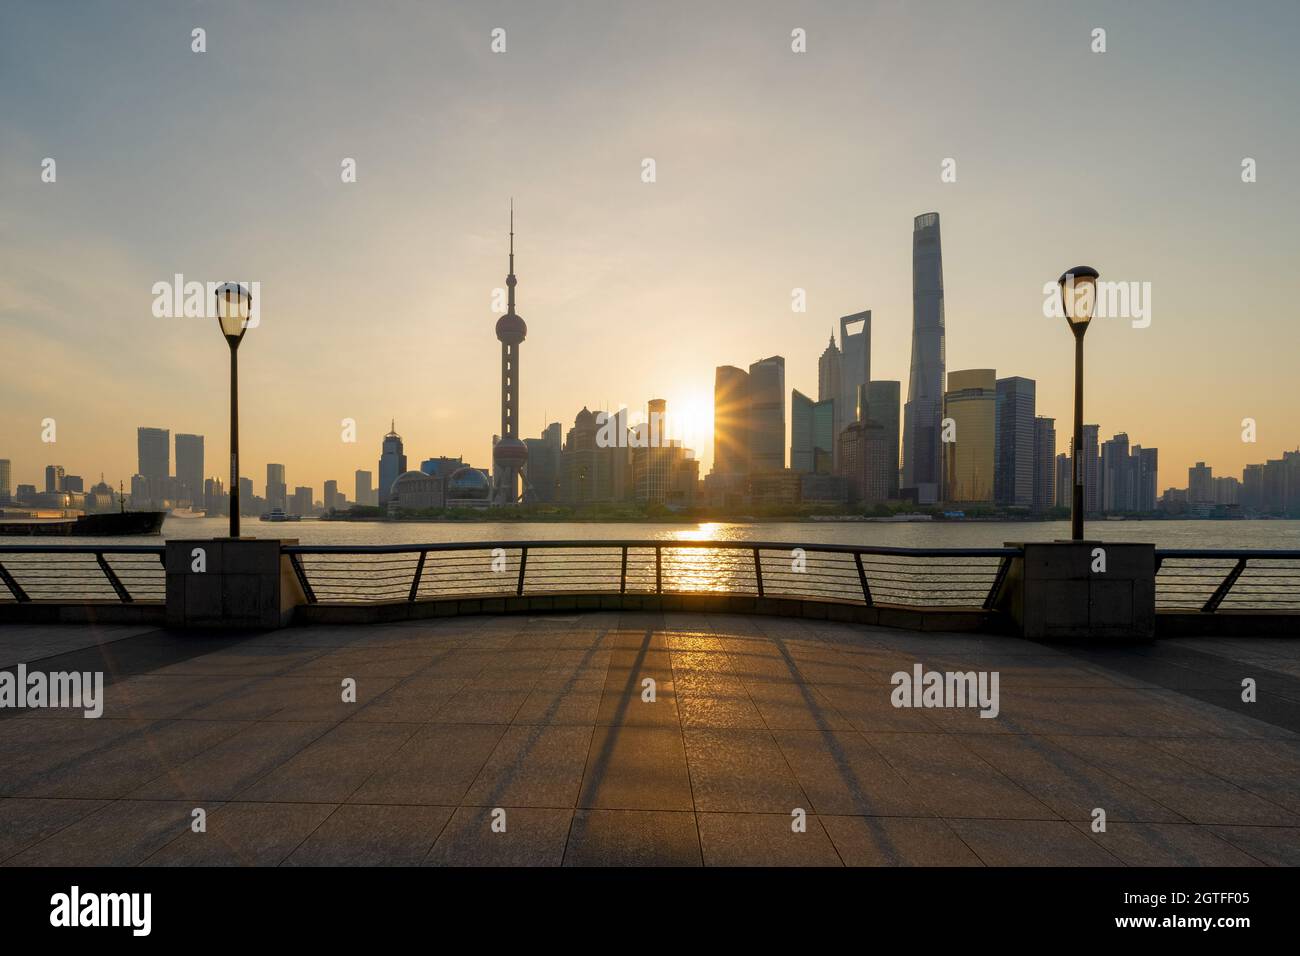 La Perla en el horizonte del centro de Shanghai junto al río Huangpu, China.  Distrito financiero y centros de negocios en la ciudad inteligente de Asia.  Rascacielos y edificios altos cerca del